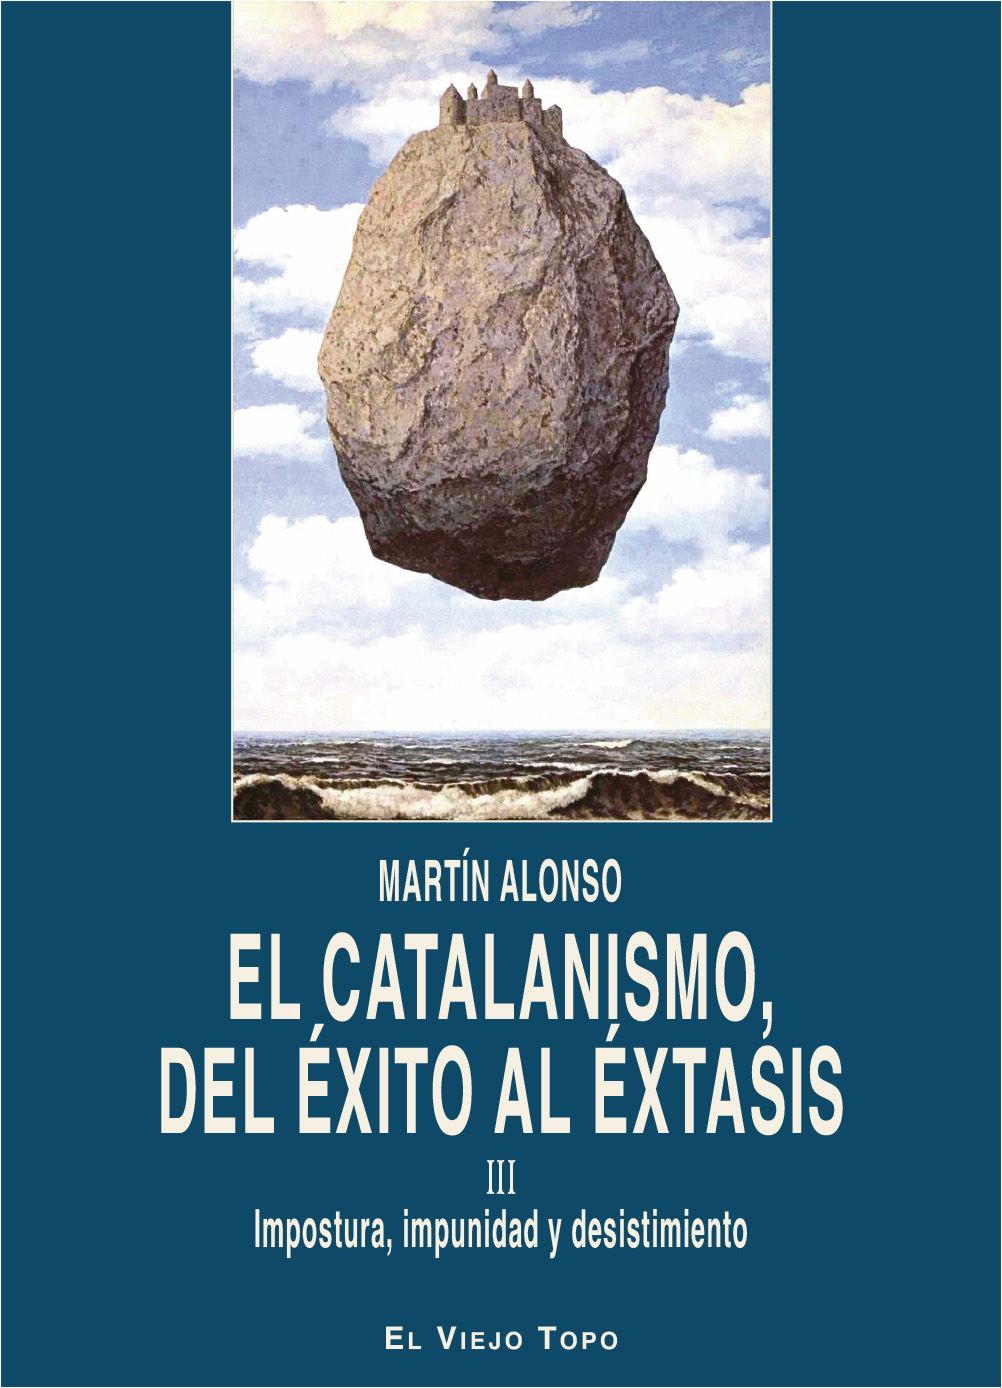 El catalanismo, del éxito al éxtasis   «III Impostura, impunidad y desistimiento»